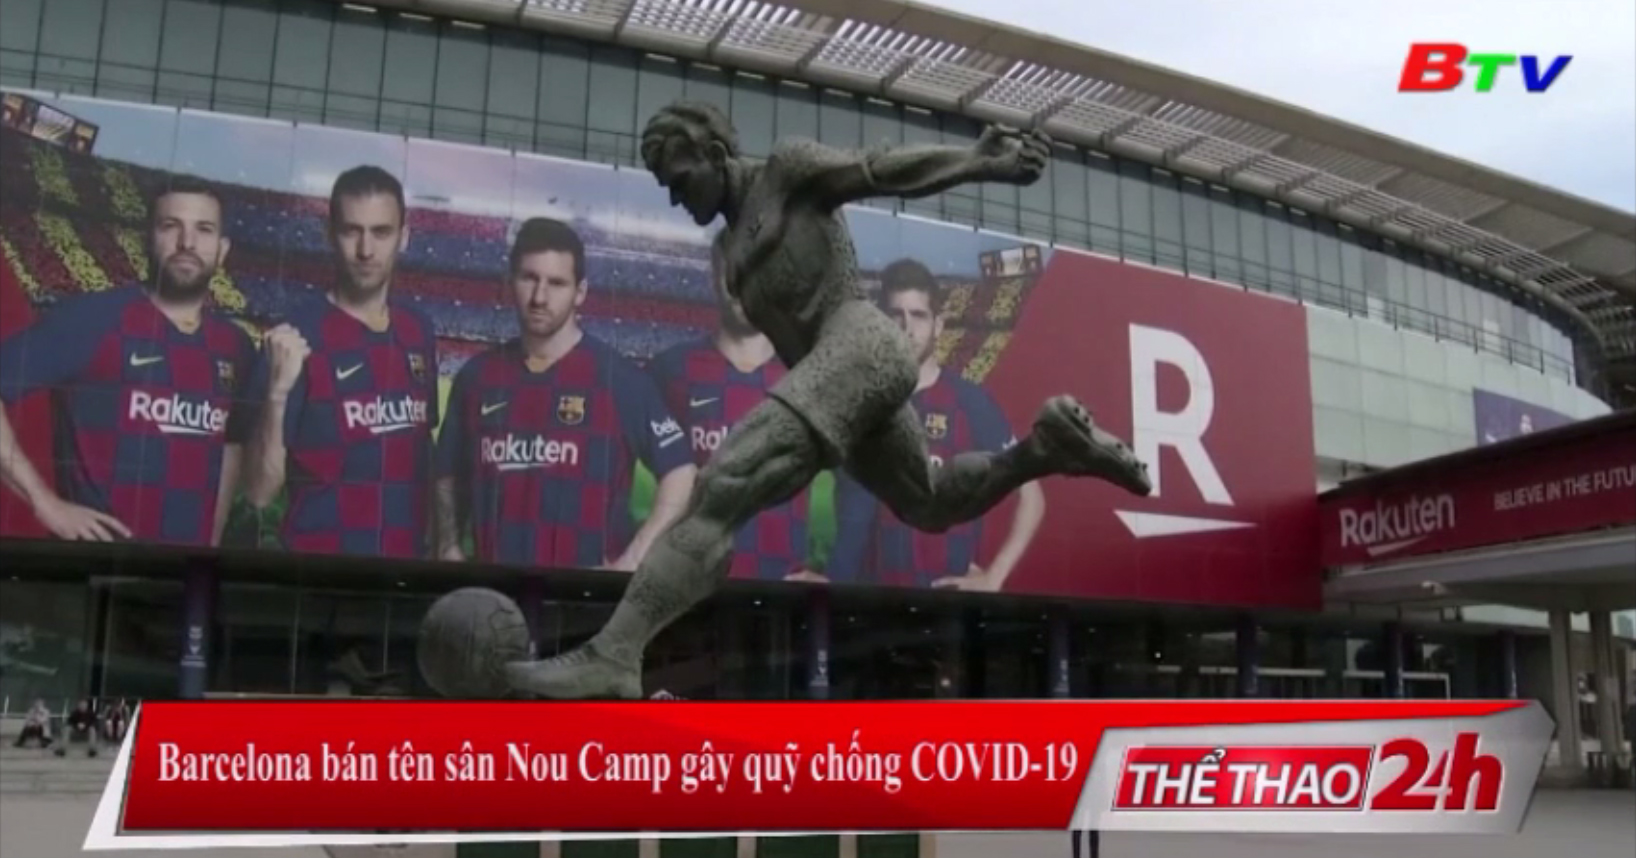 Barcelona bán tên sân Nou Camp gây quỹ chống Covid-19